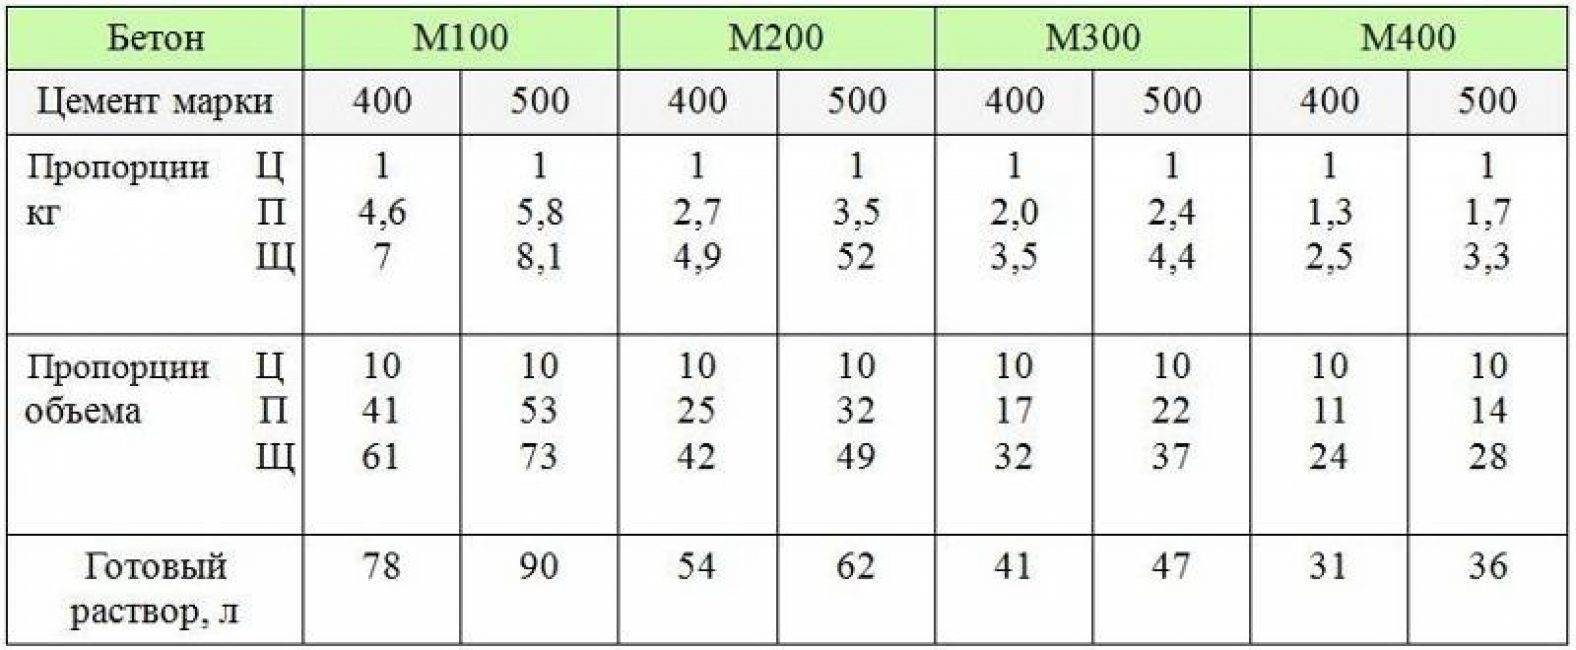 Бетон м150: состав, характеристики, пропорции, главные преимущества